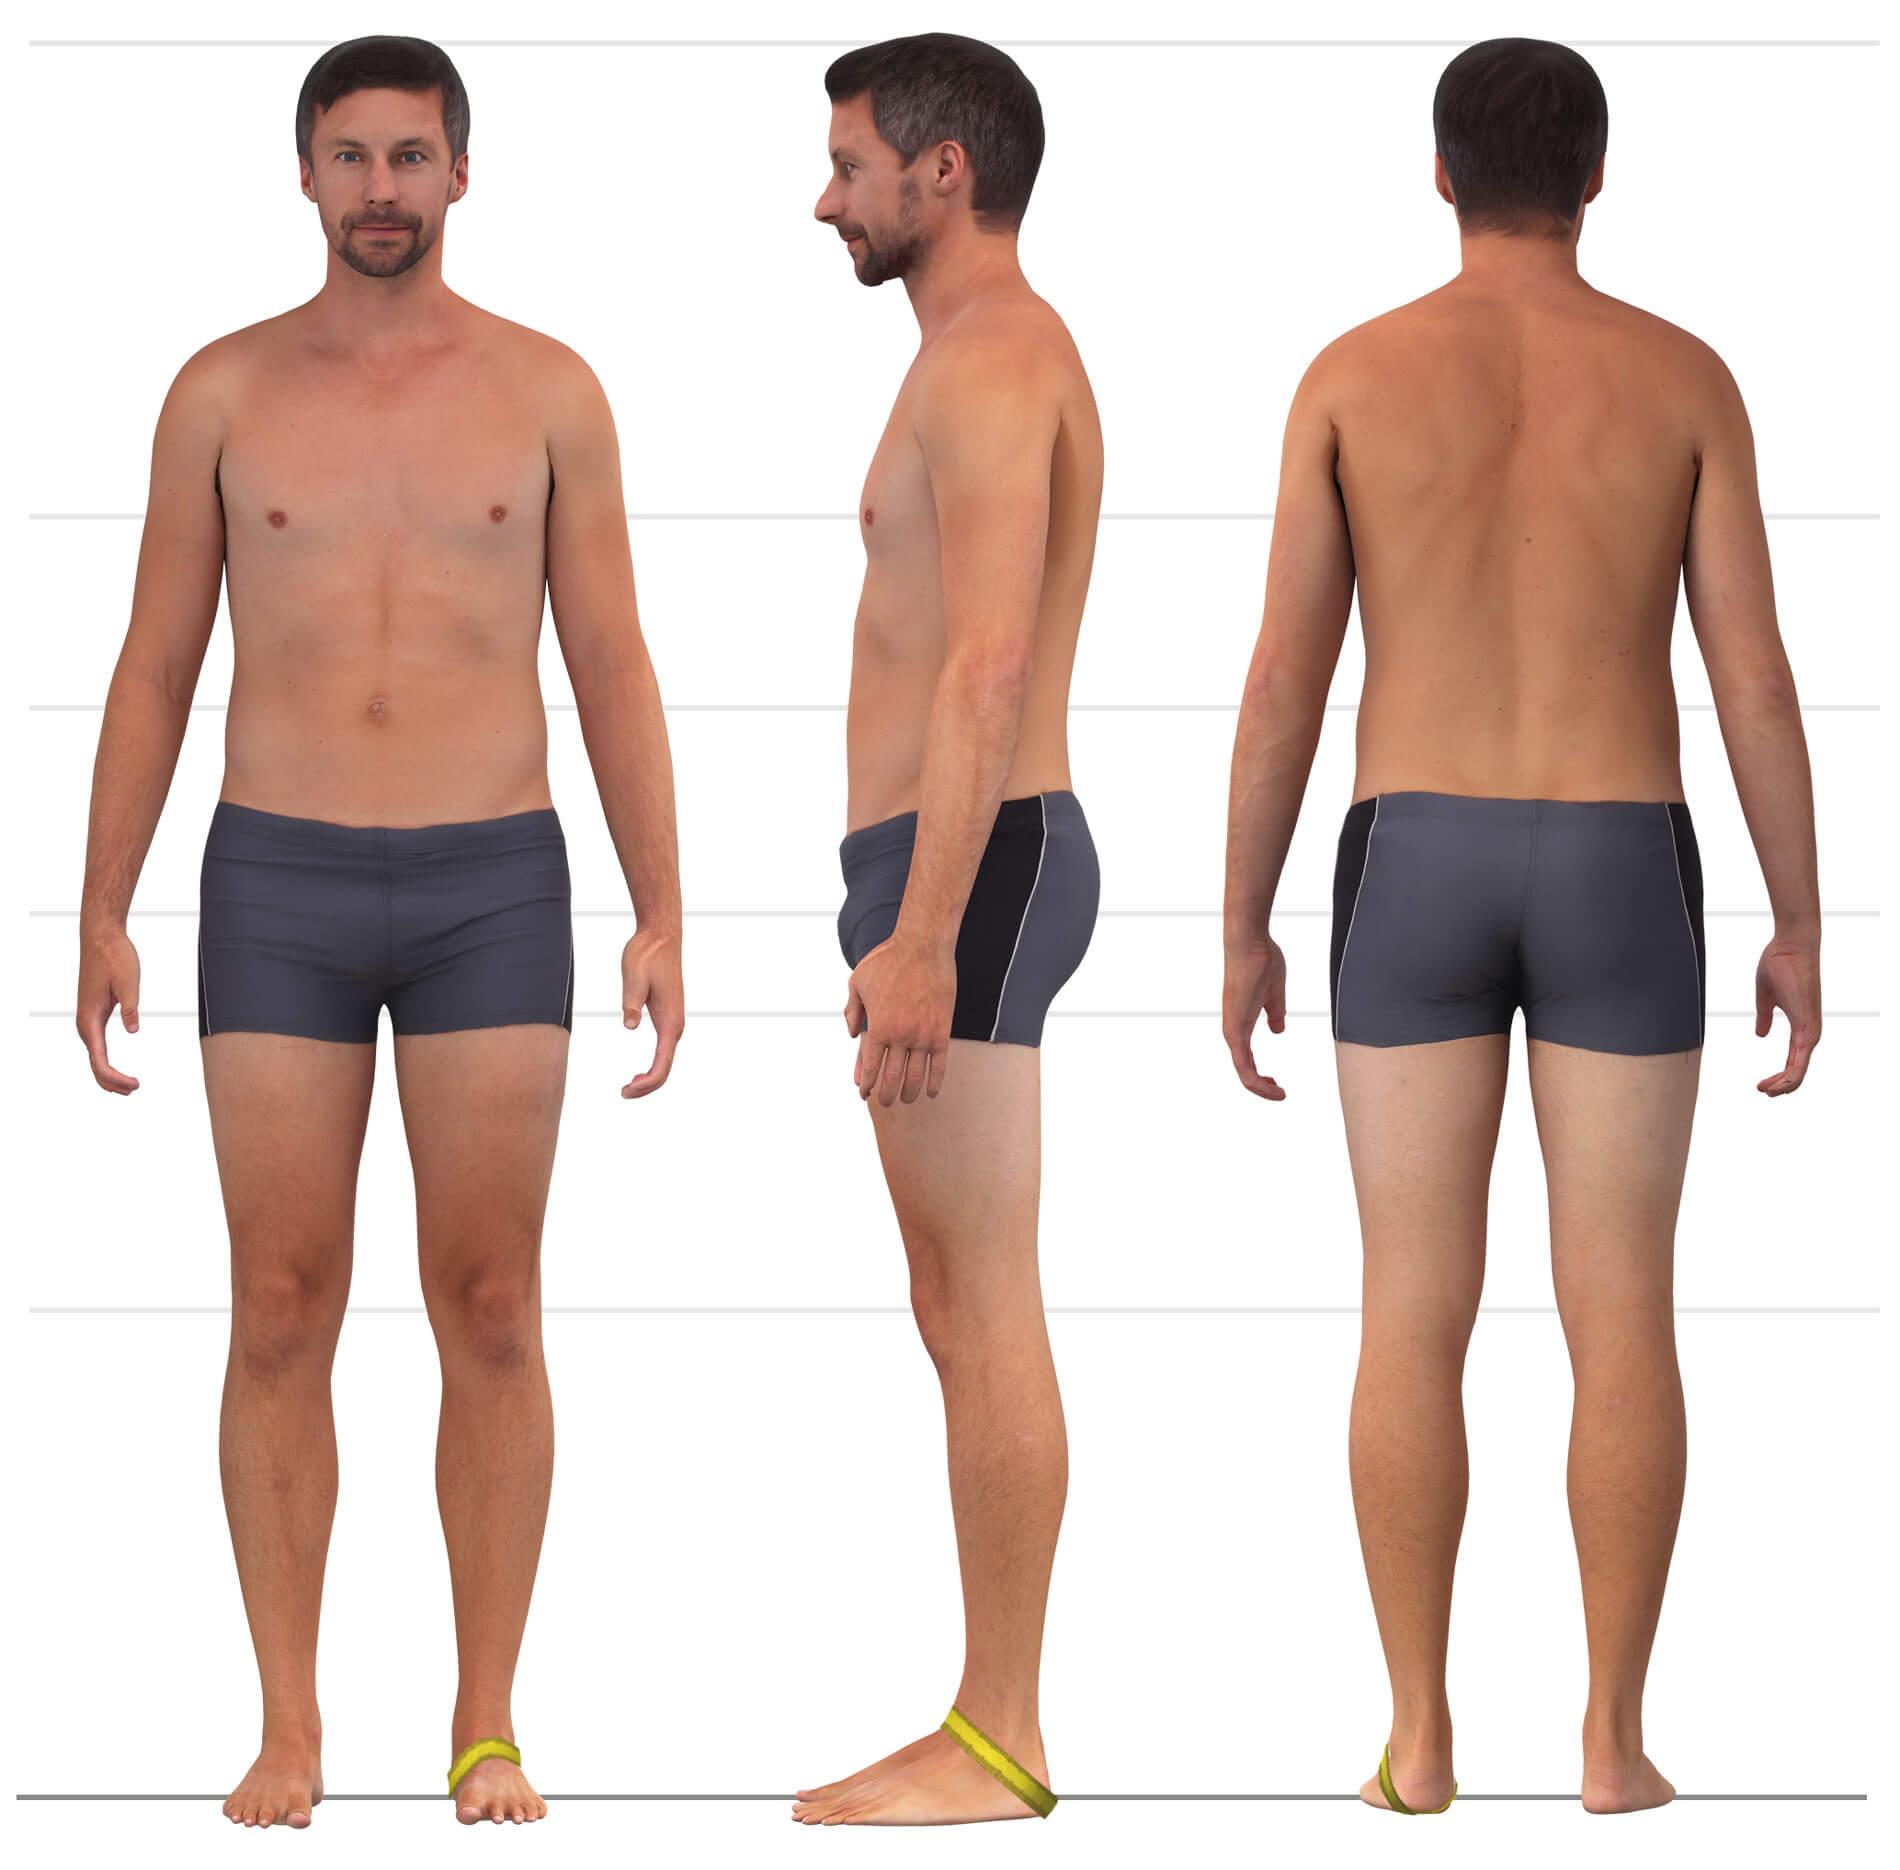 Das Bild zeigt das Maßnehmen des Ferse-Rist-Umfangs für Männerhosen.